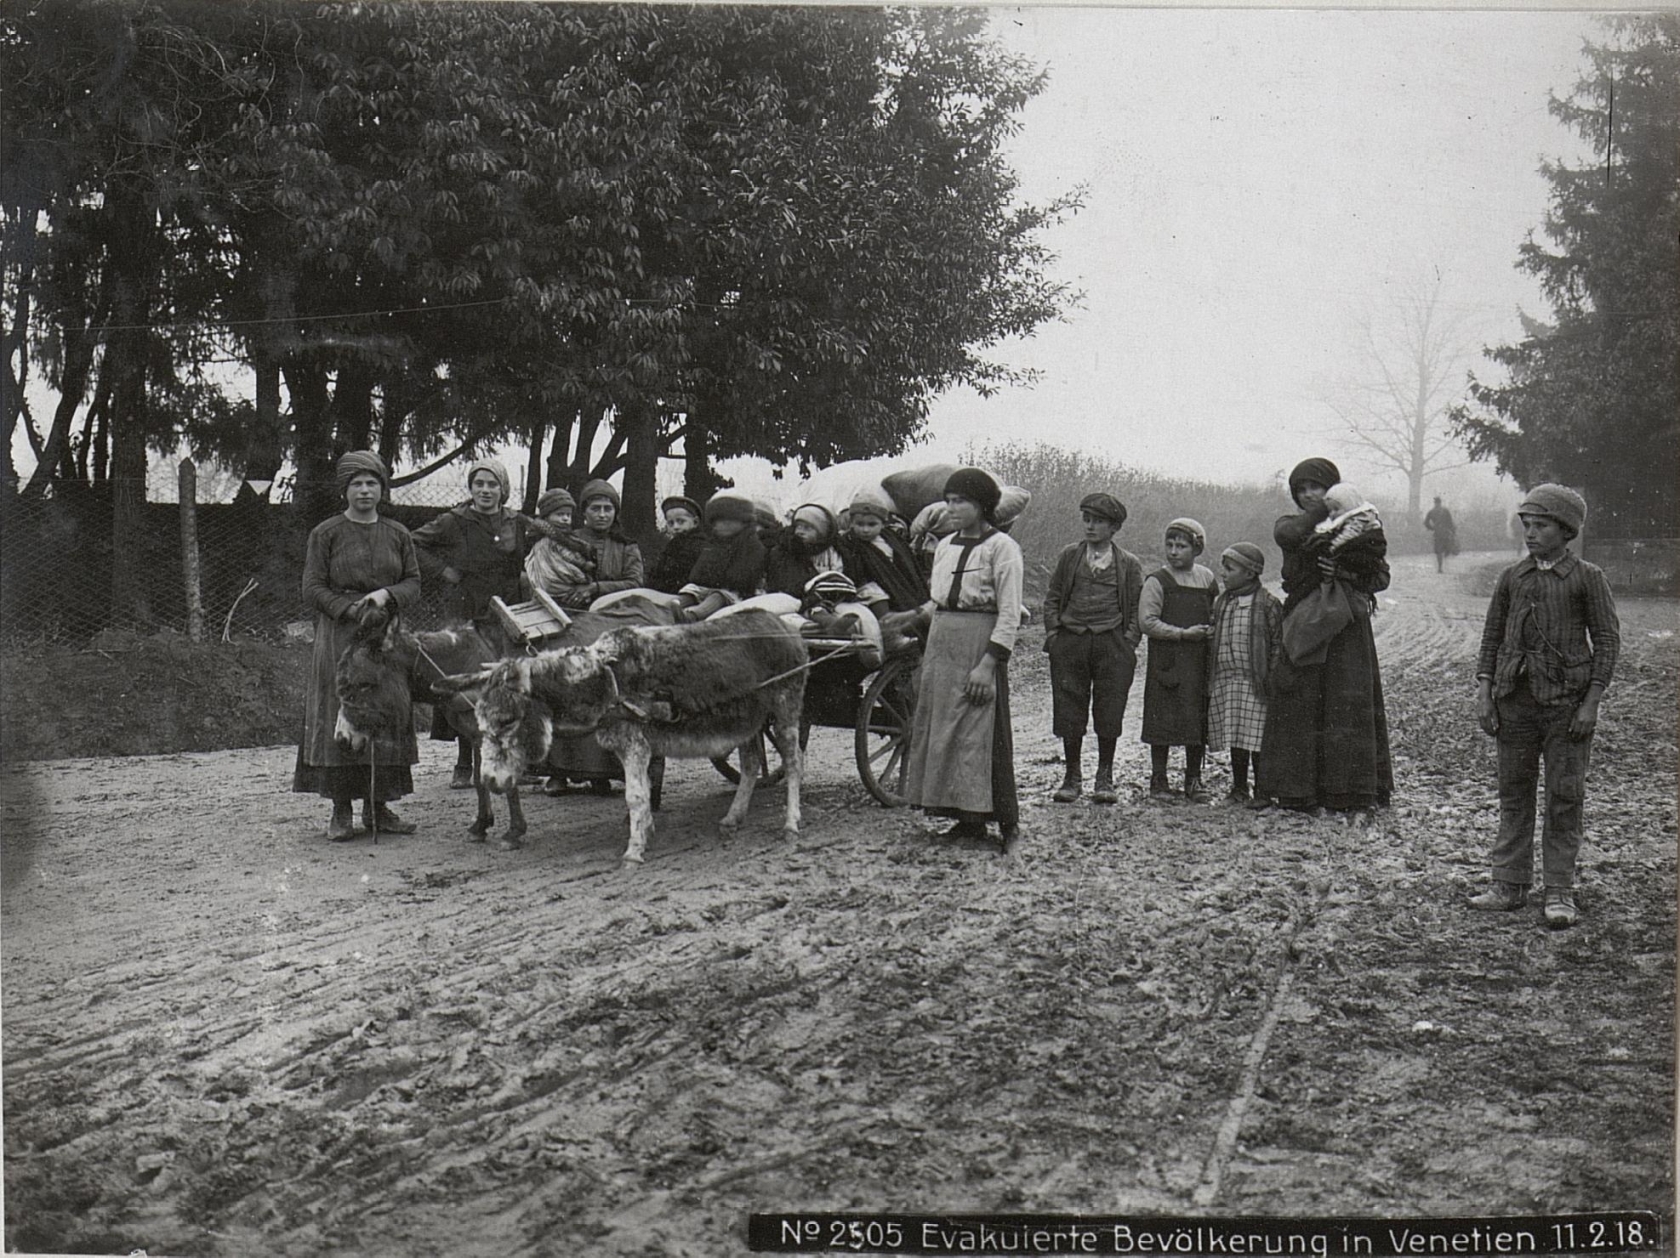 Profughi italiani, fuggiti nel corso della rotta di Caporetto, su una strada del Veneto nel febbraio 1918